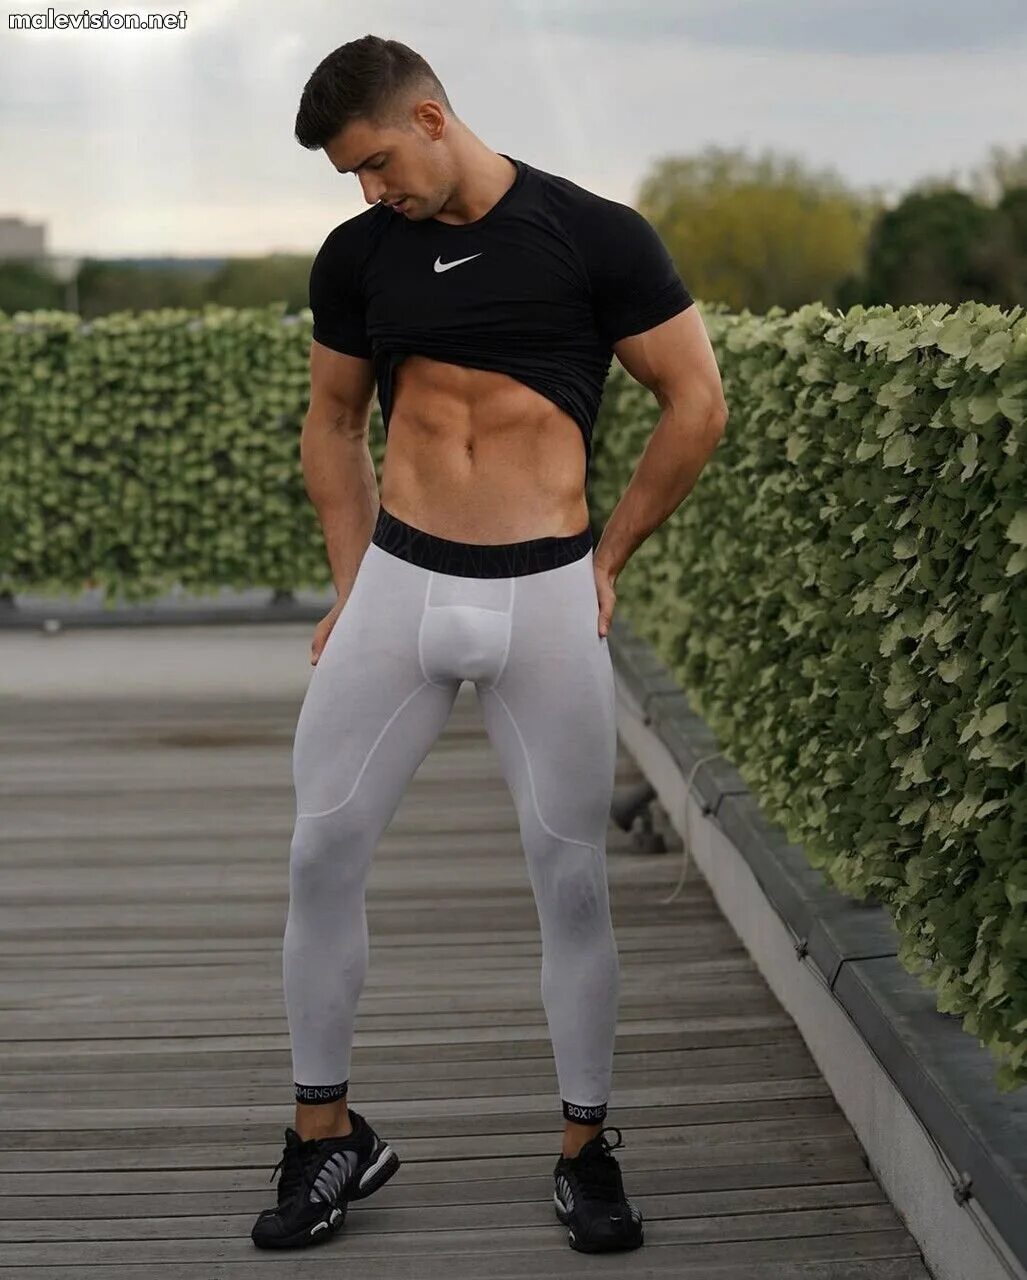 Никколо Нери. Никколо Нери модель. Обтягивающие штаны для мужчин. Спортивные штаны в обтяжку. Обтянутые штаны с большими